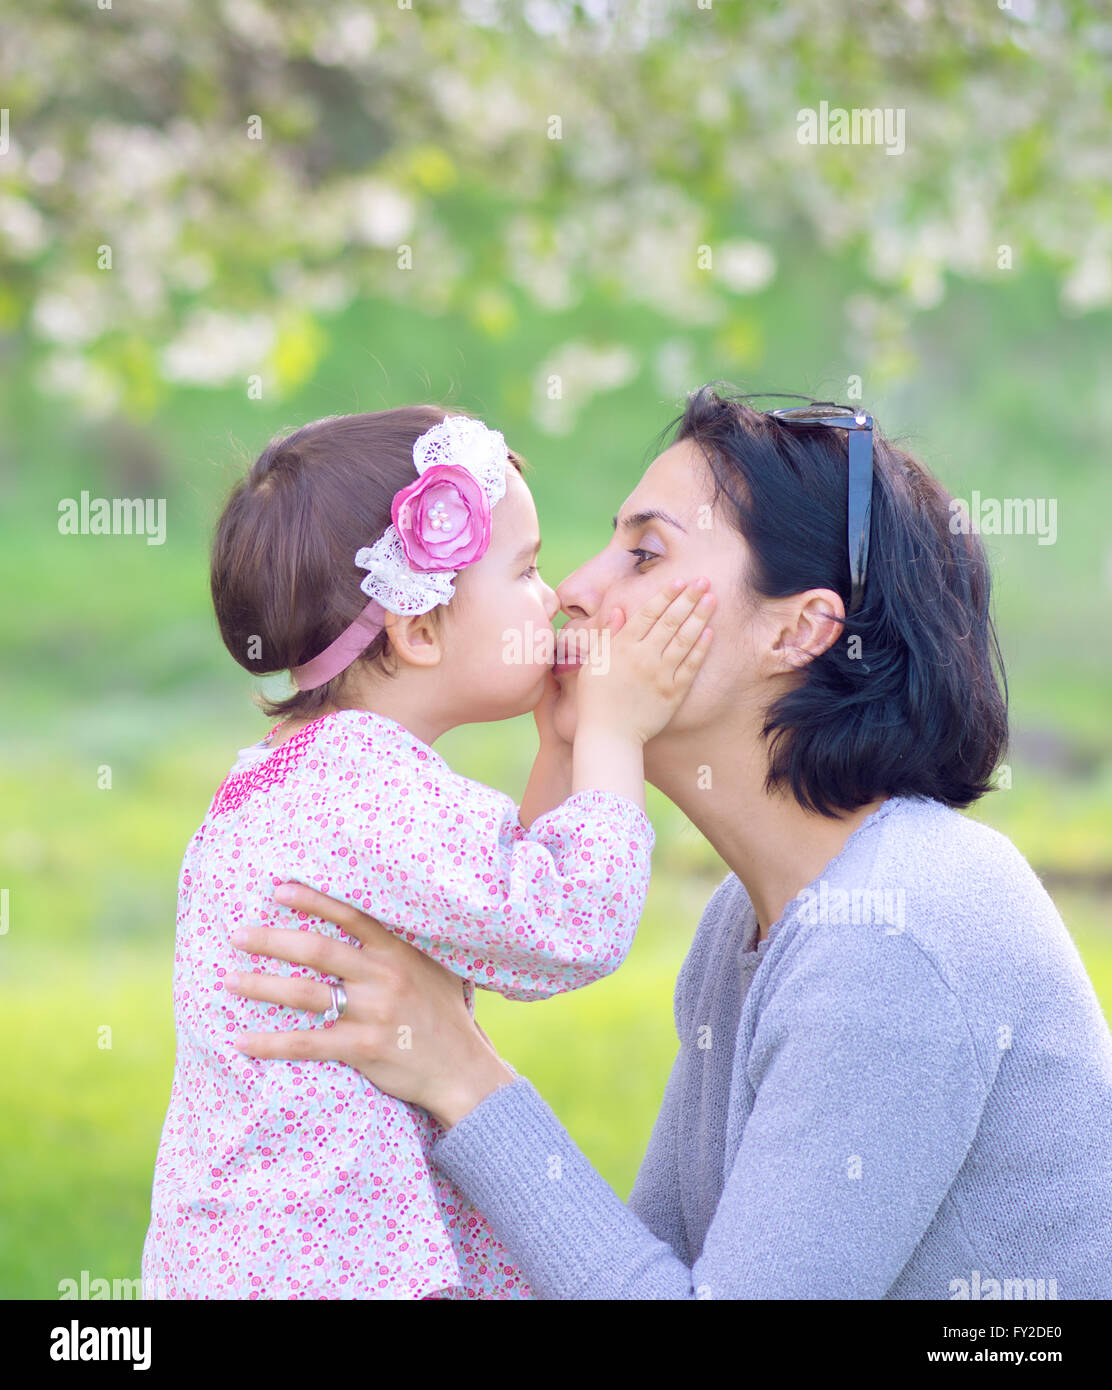 Familie, Kinder und glückliche Menschen Konzept - glückliches kleines Mädchen umarmen und küssen ihre Mutter auf grünem Hintergrund Stockfoto